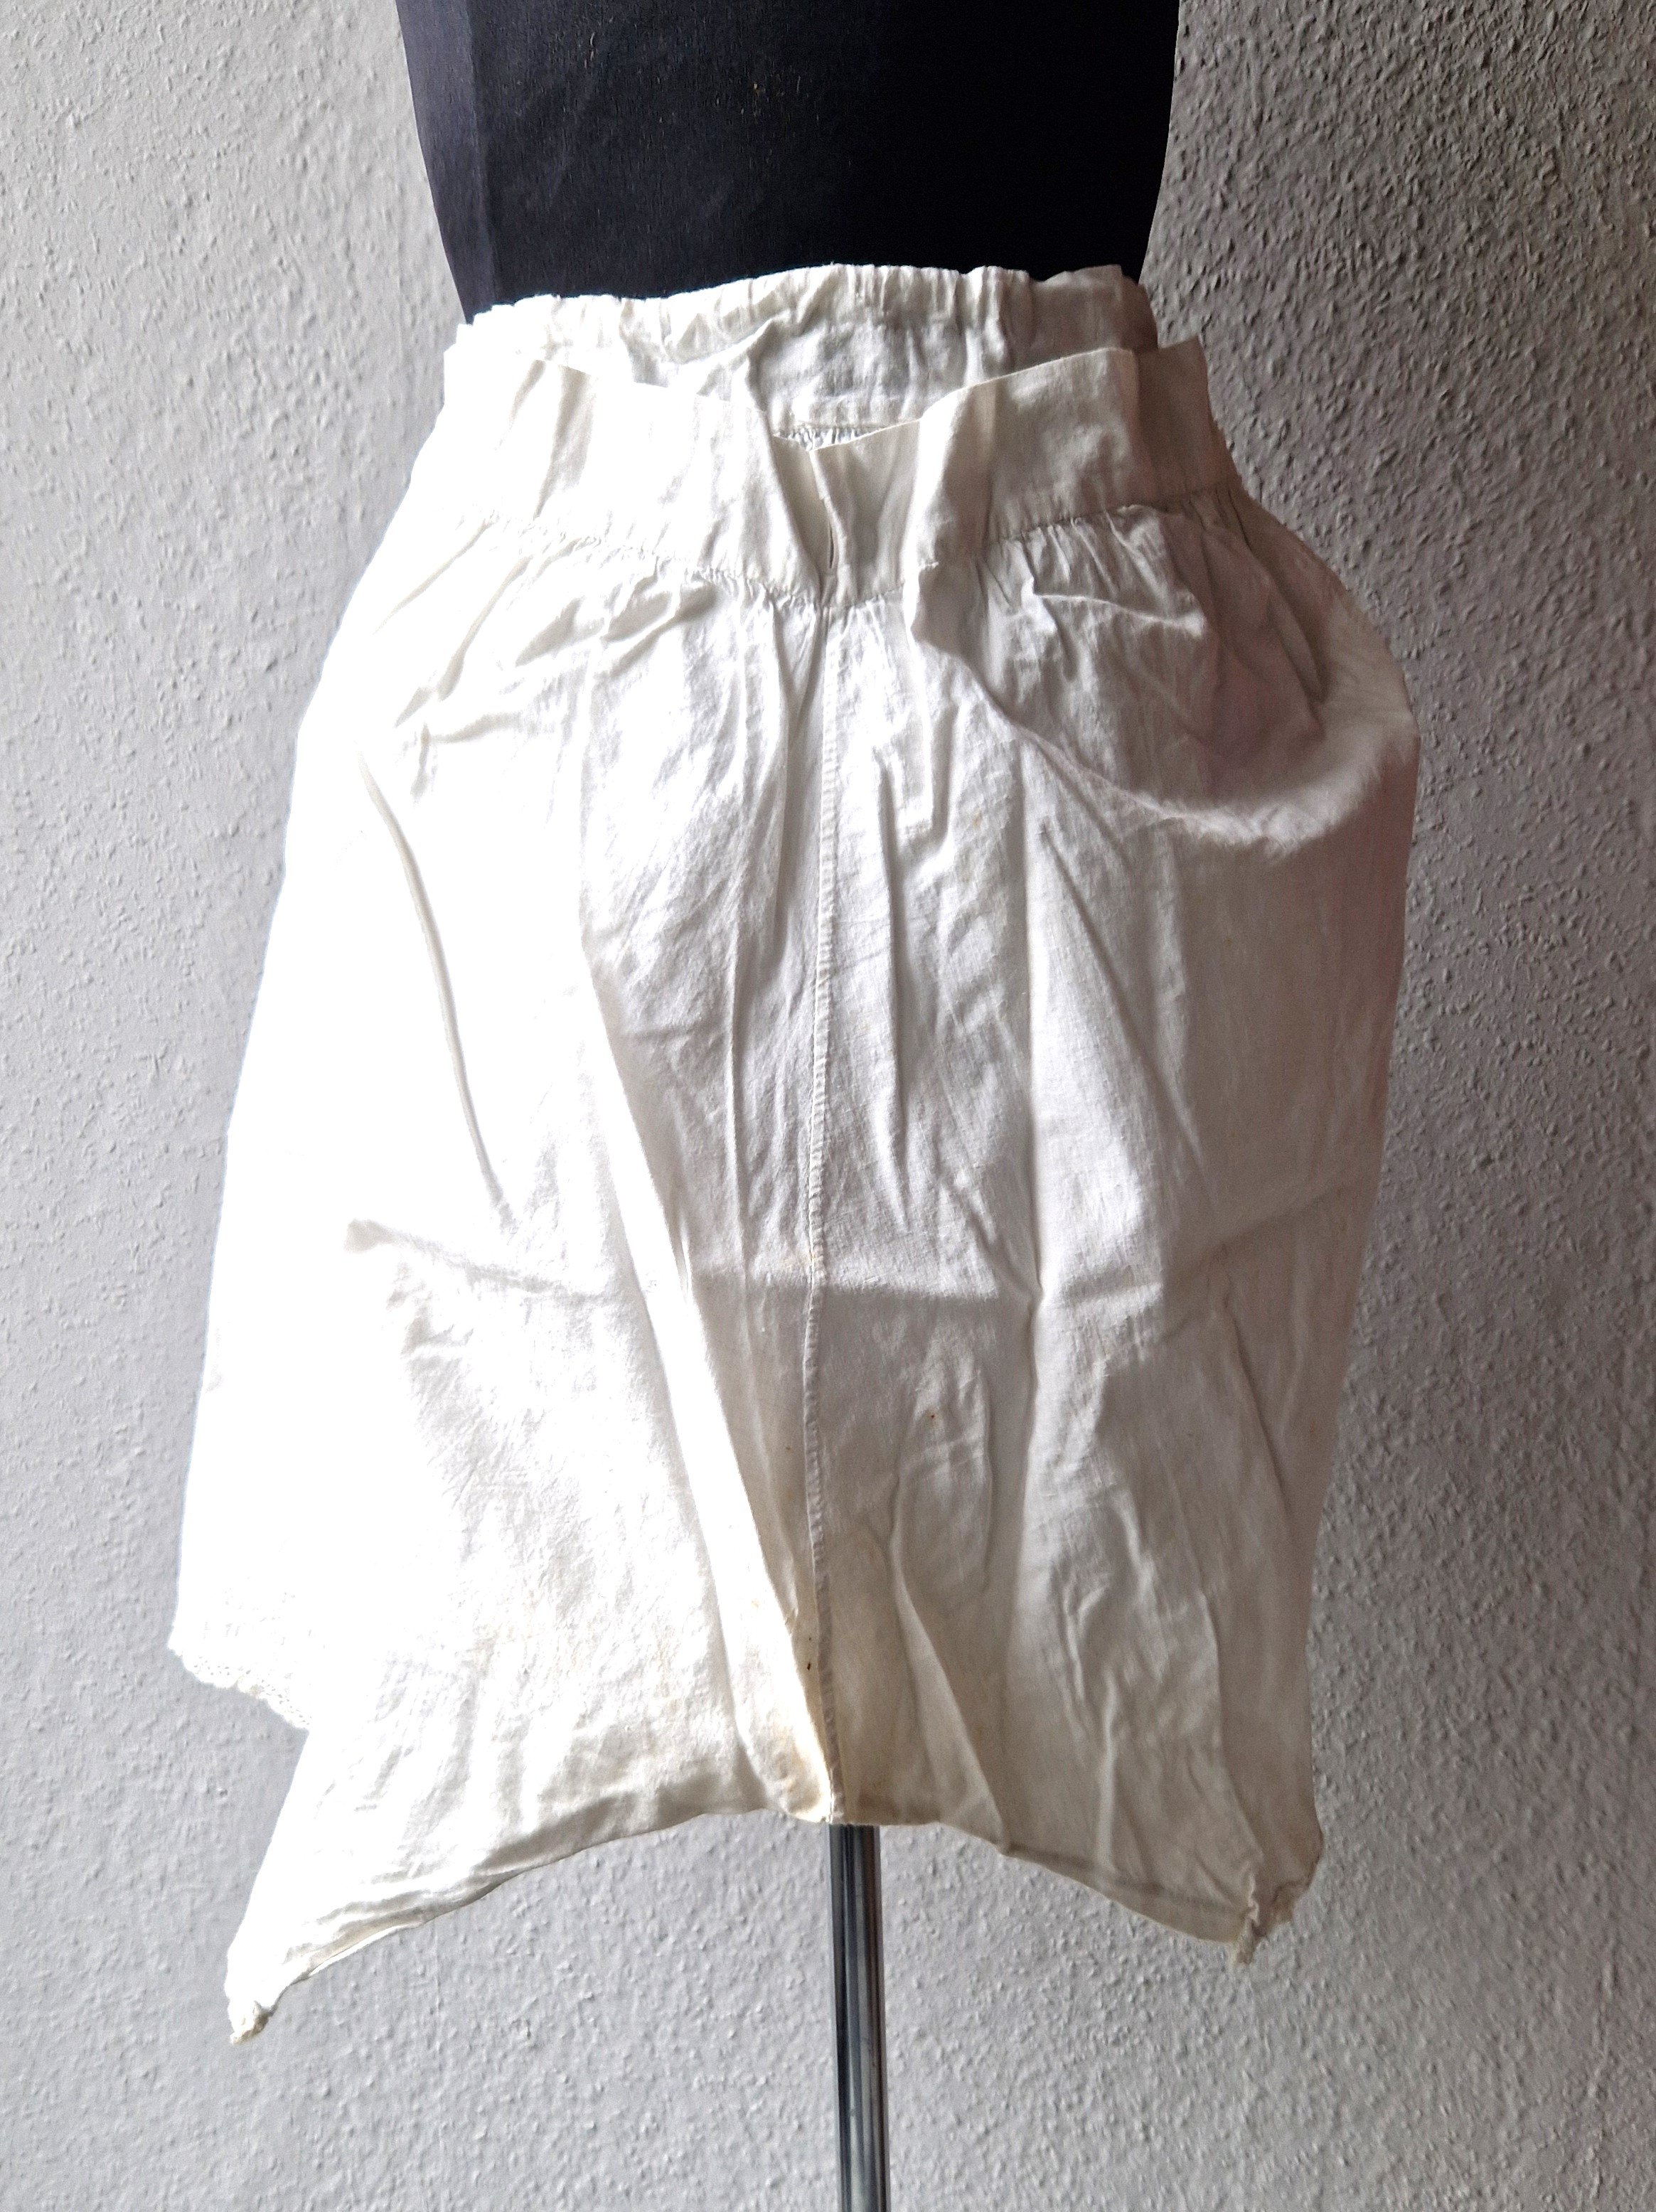 Damenunterhose aus weißer Baumwolle und Spitze, um 1900 (Schloß Wernigerode GmbH RR-F)